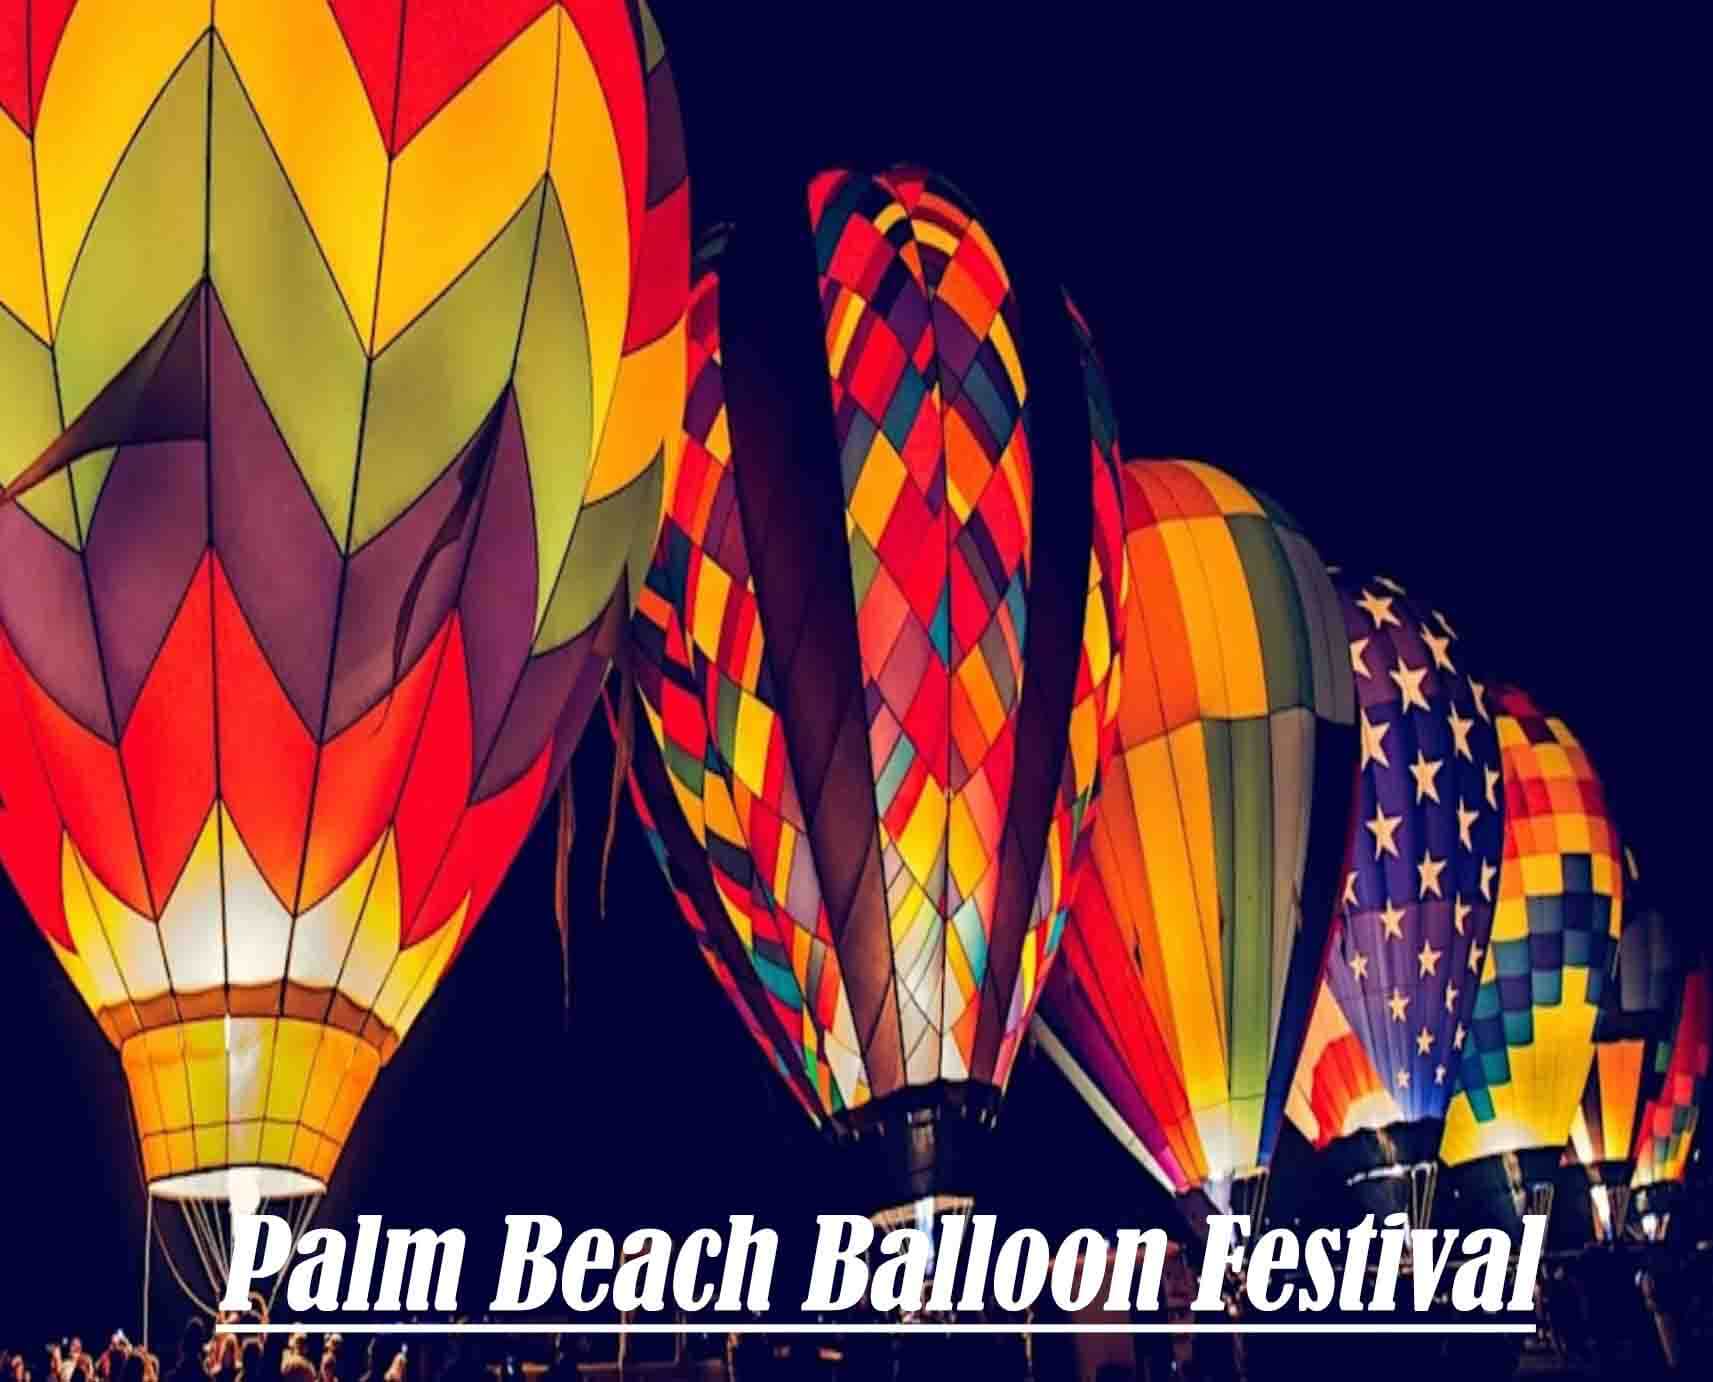 Palm Beach Balloon Festival